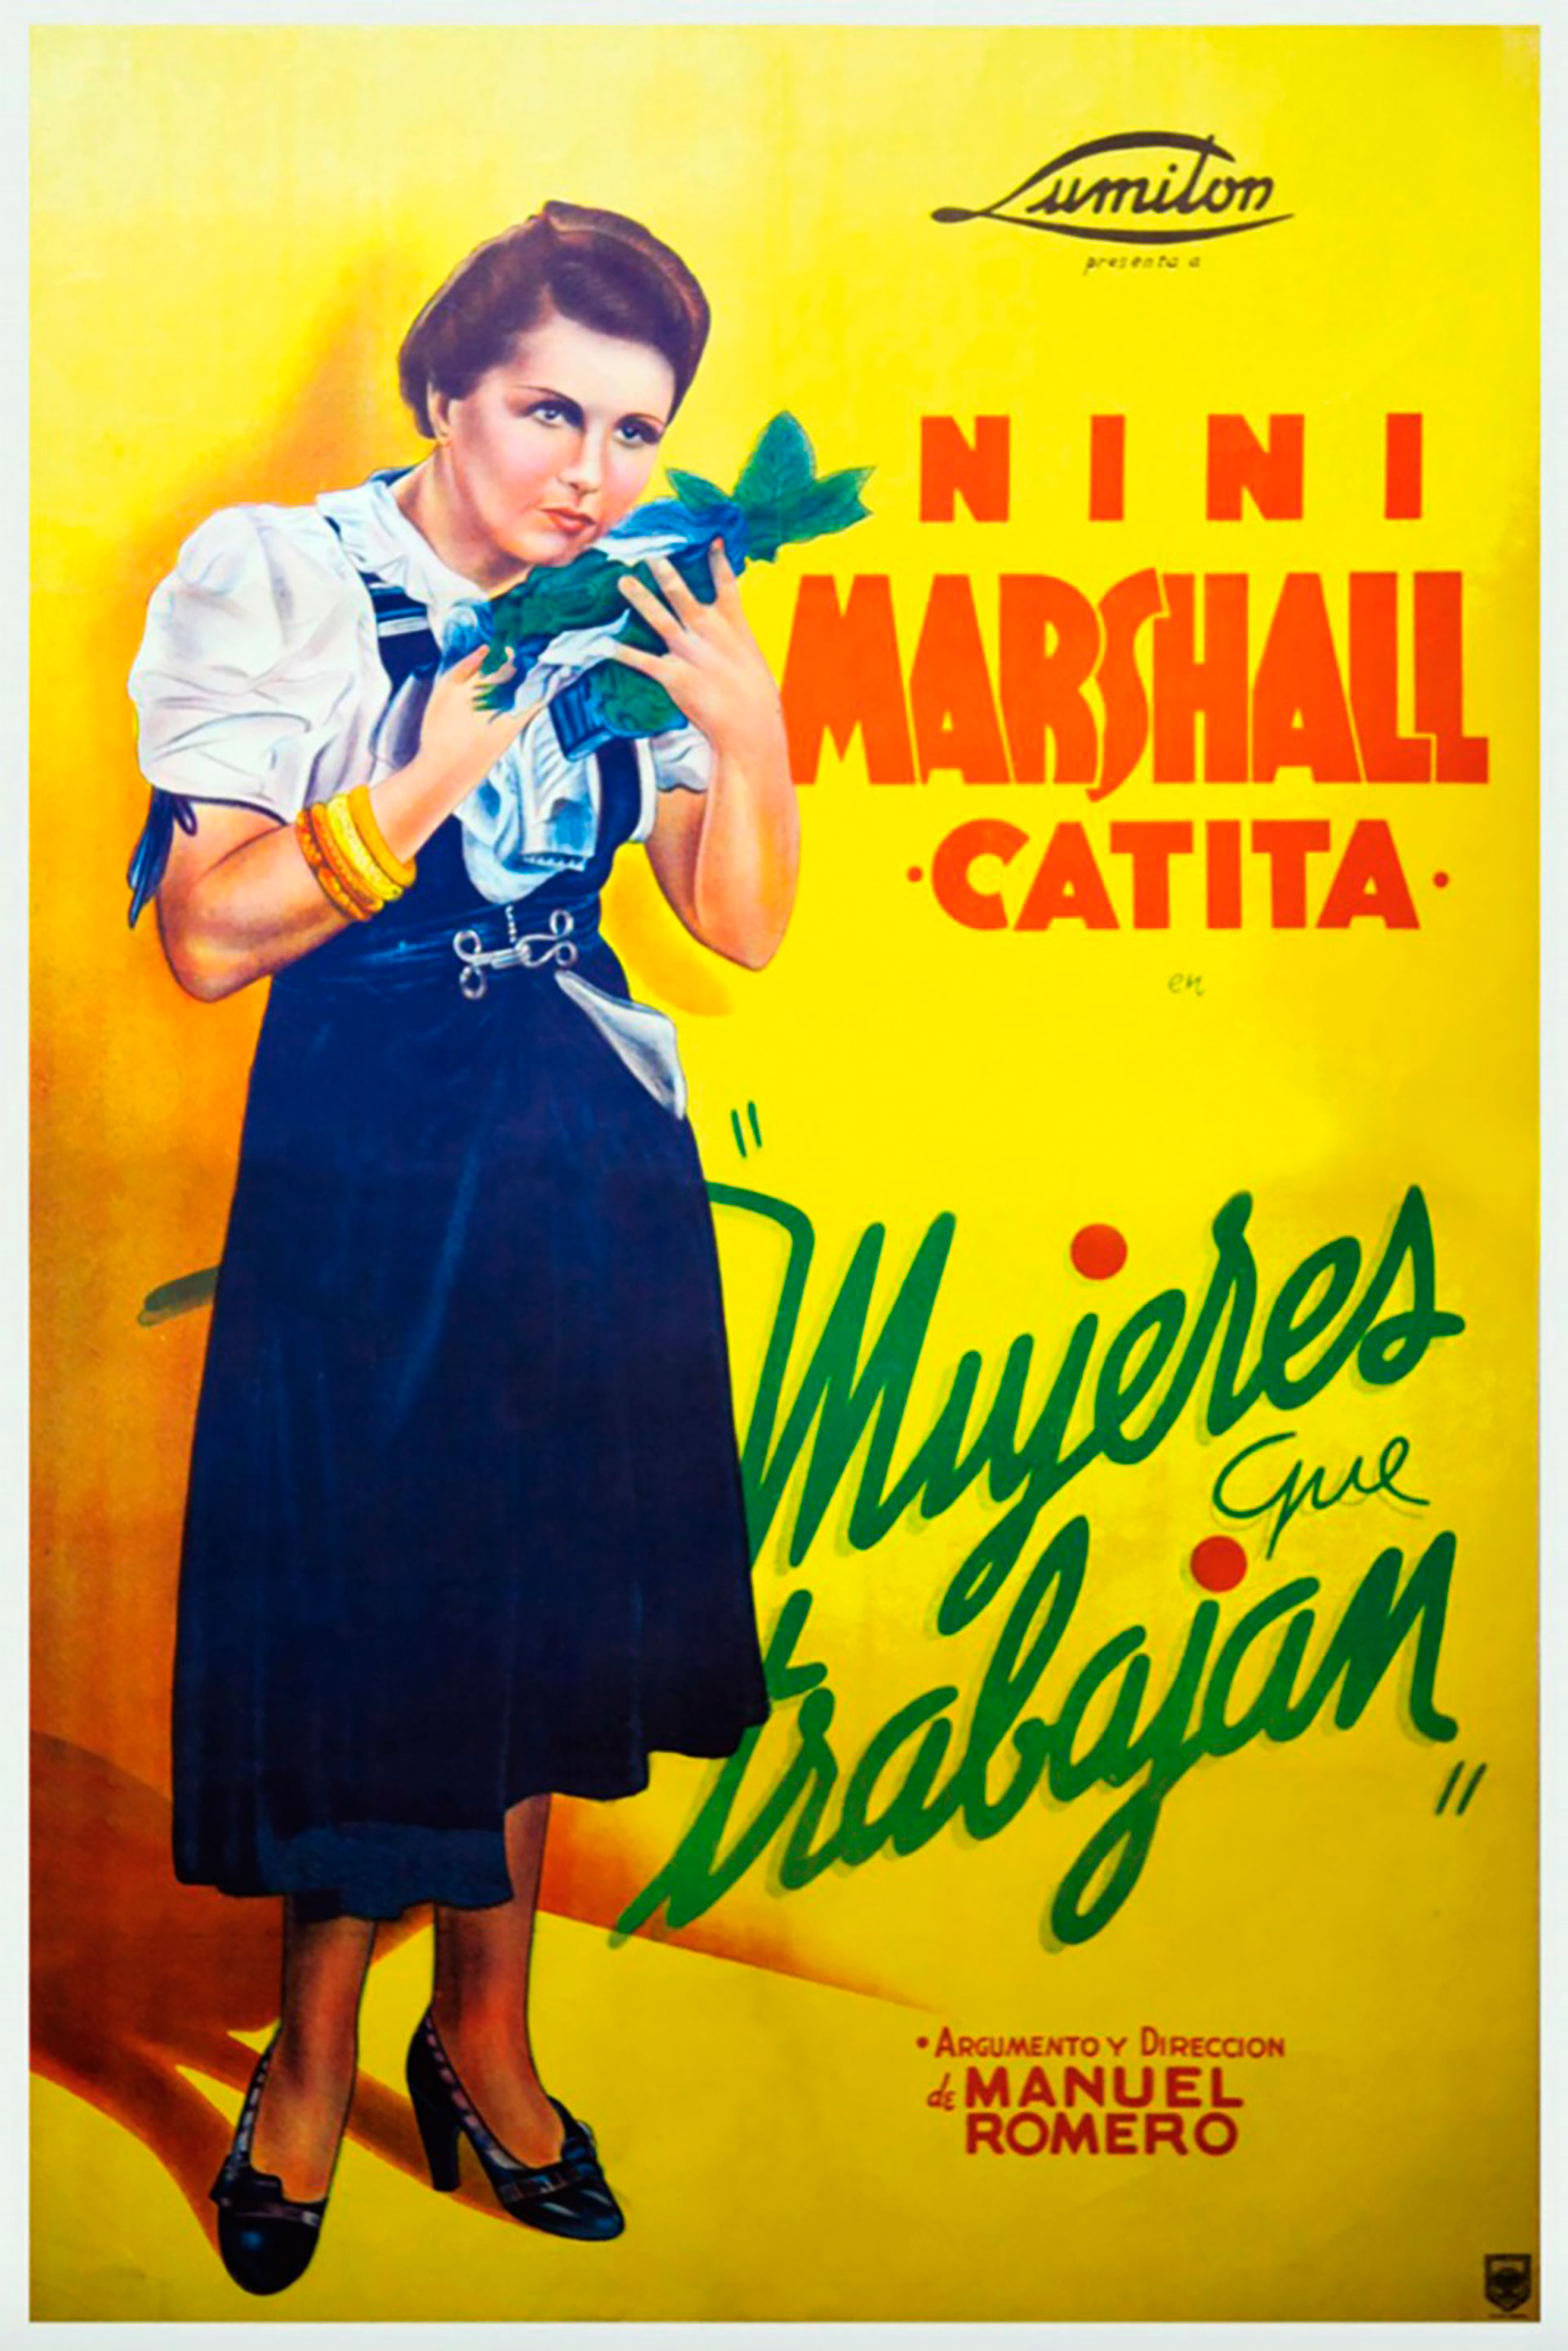 El póster de "Mujeres que trabajan", de Niní Marshall